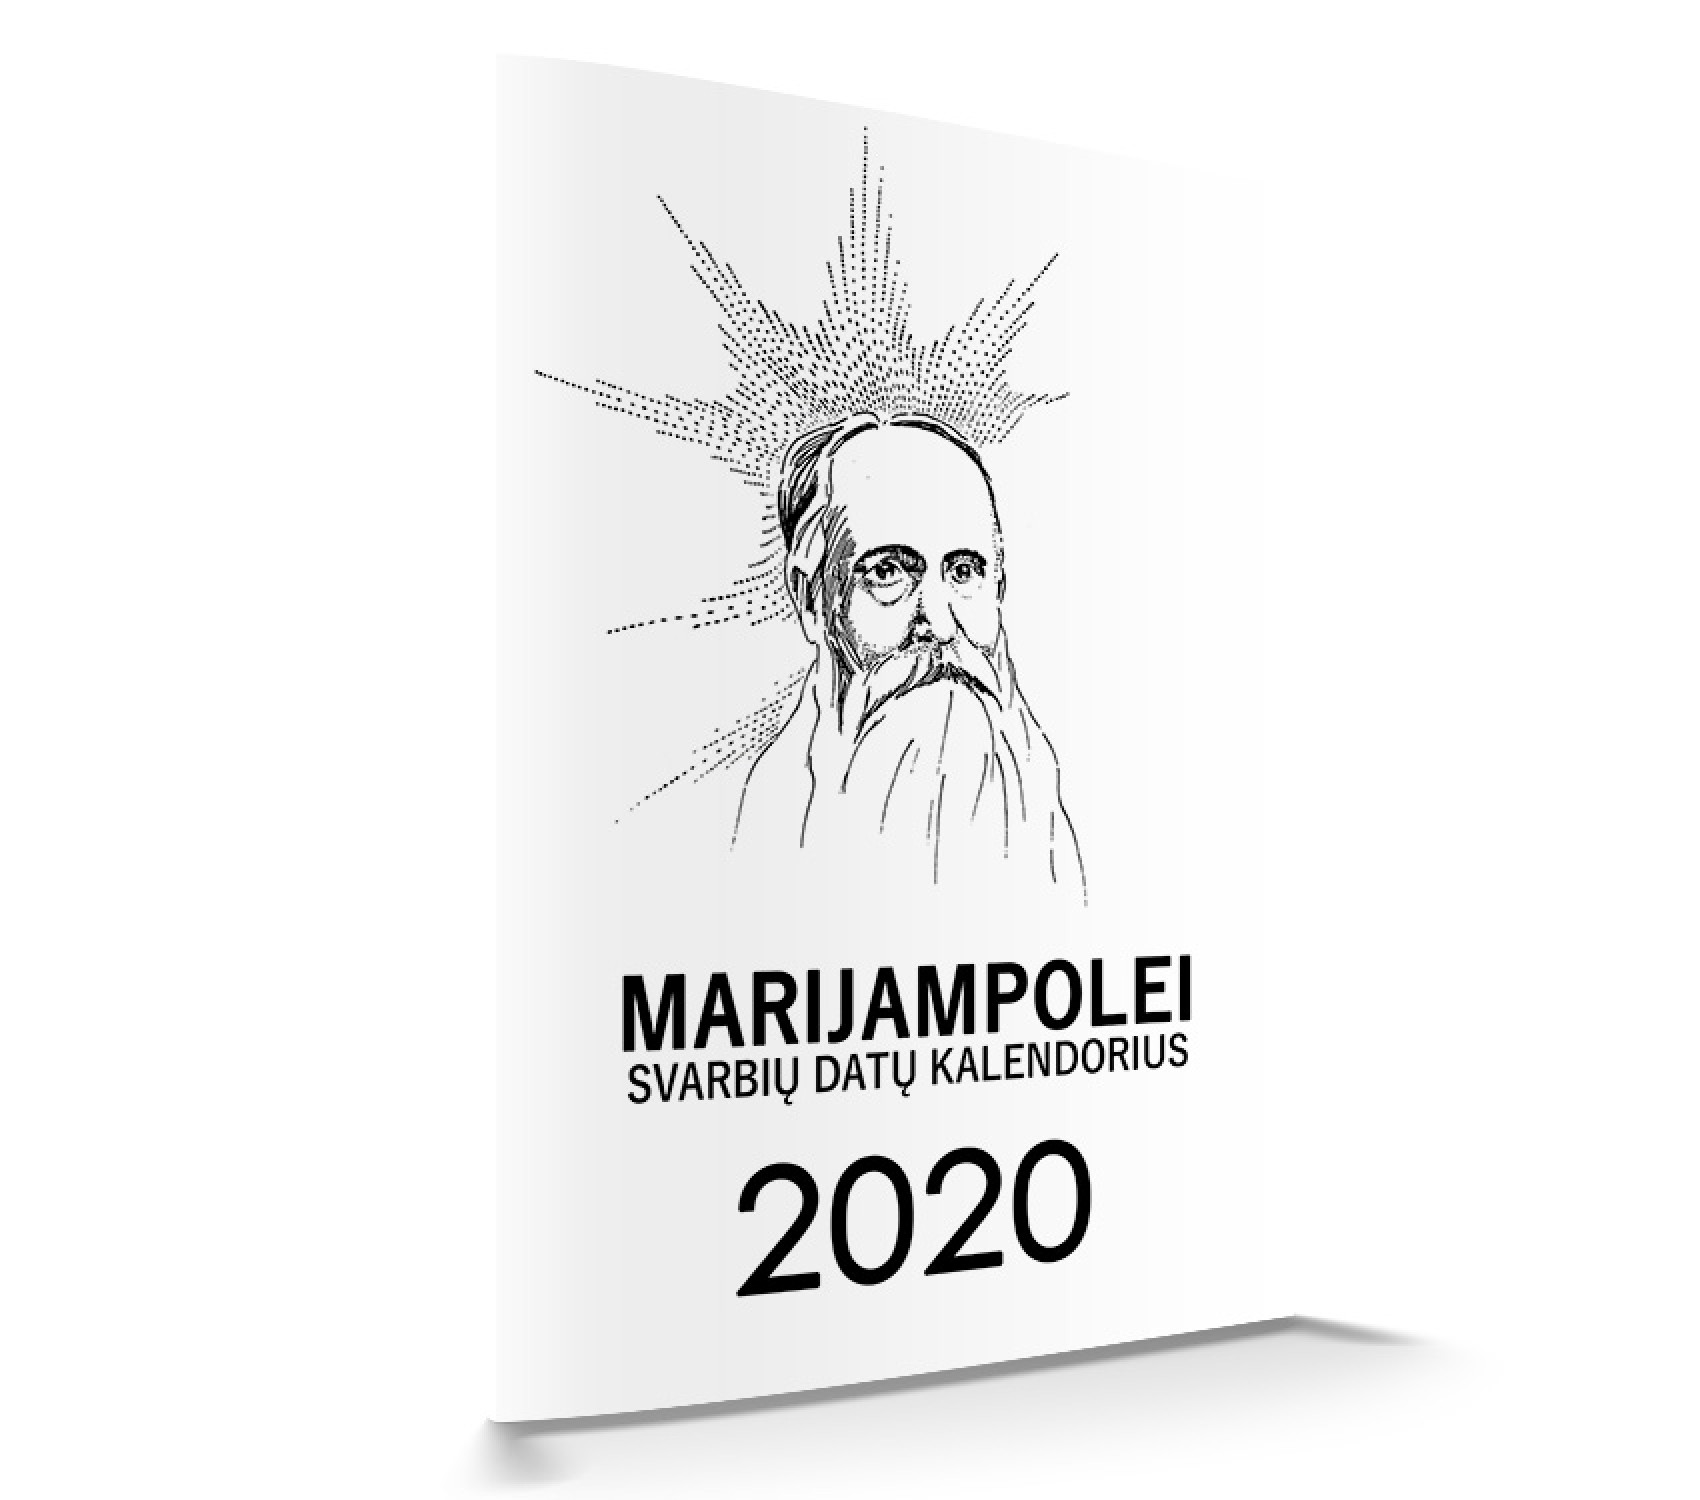 Marijampolei svarbių datų kalendorius 2020